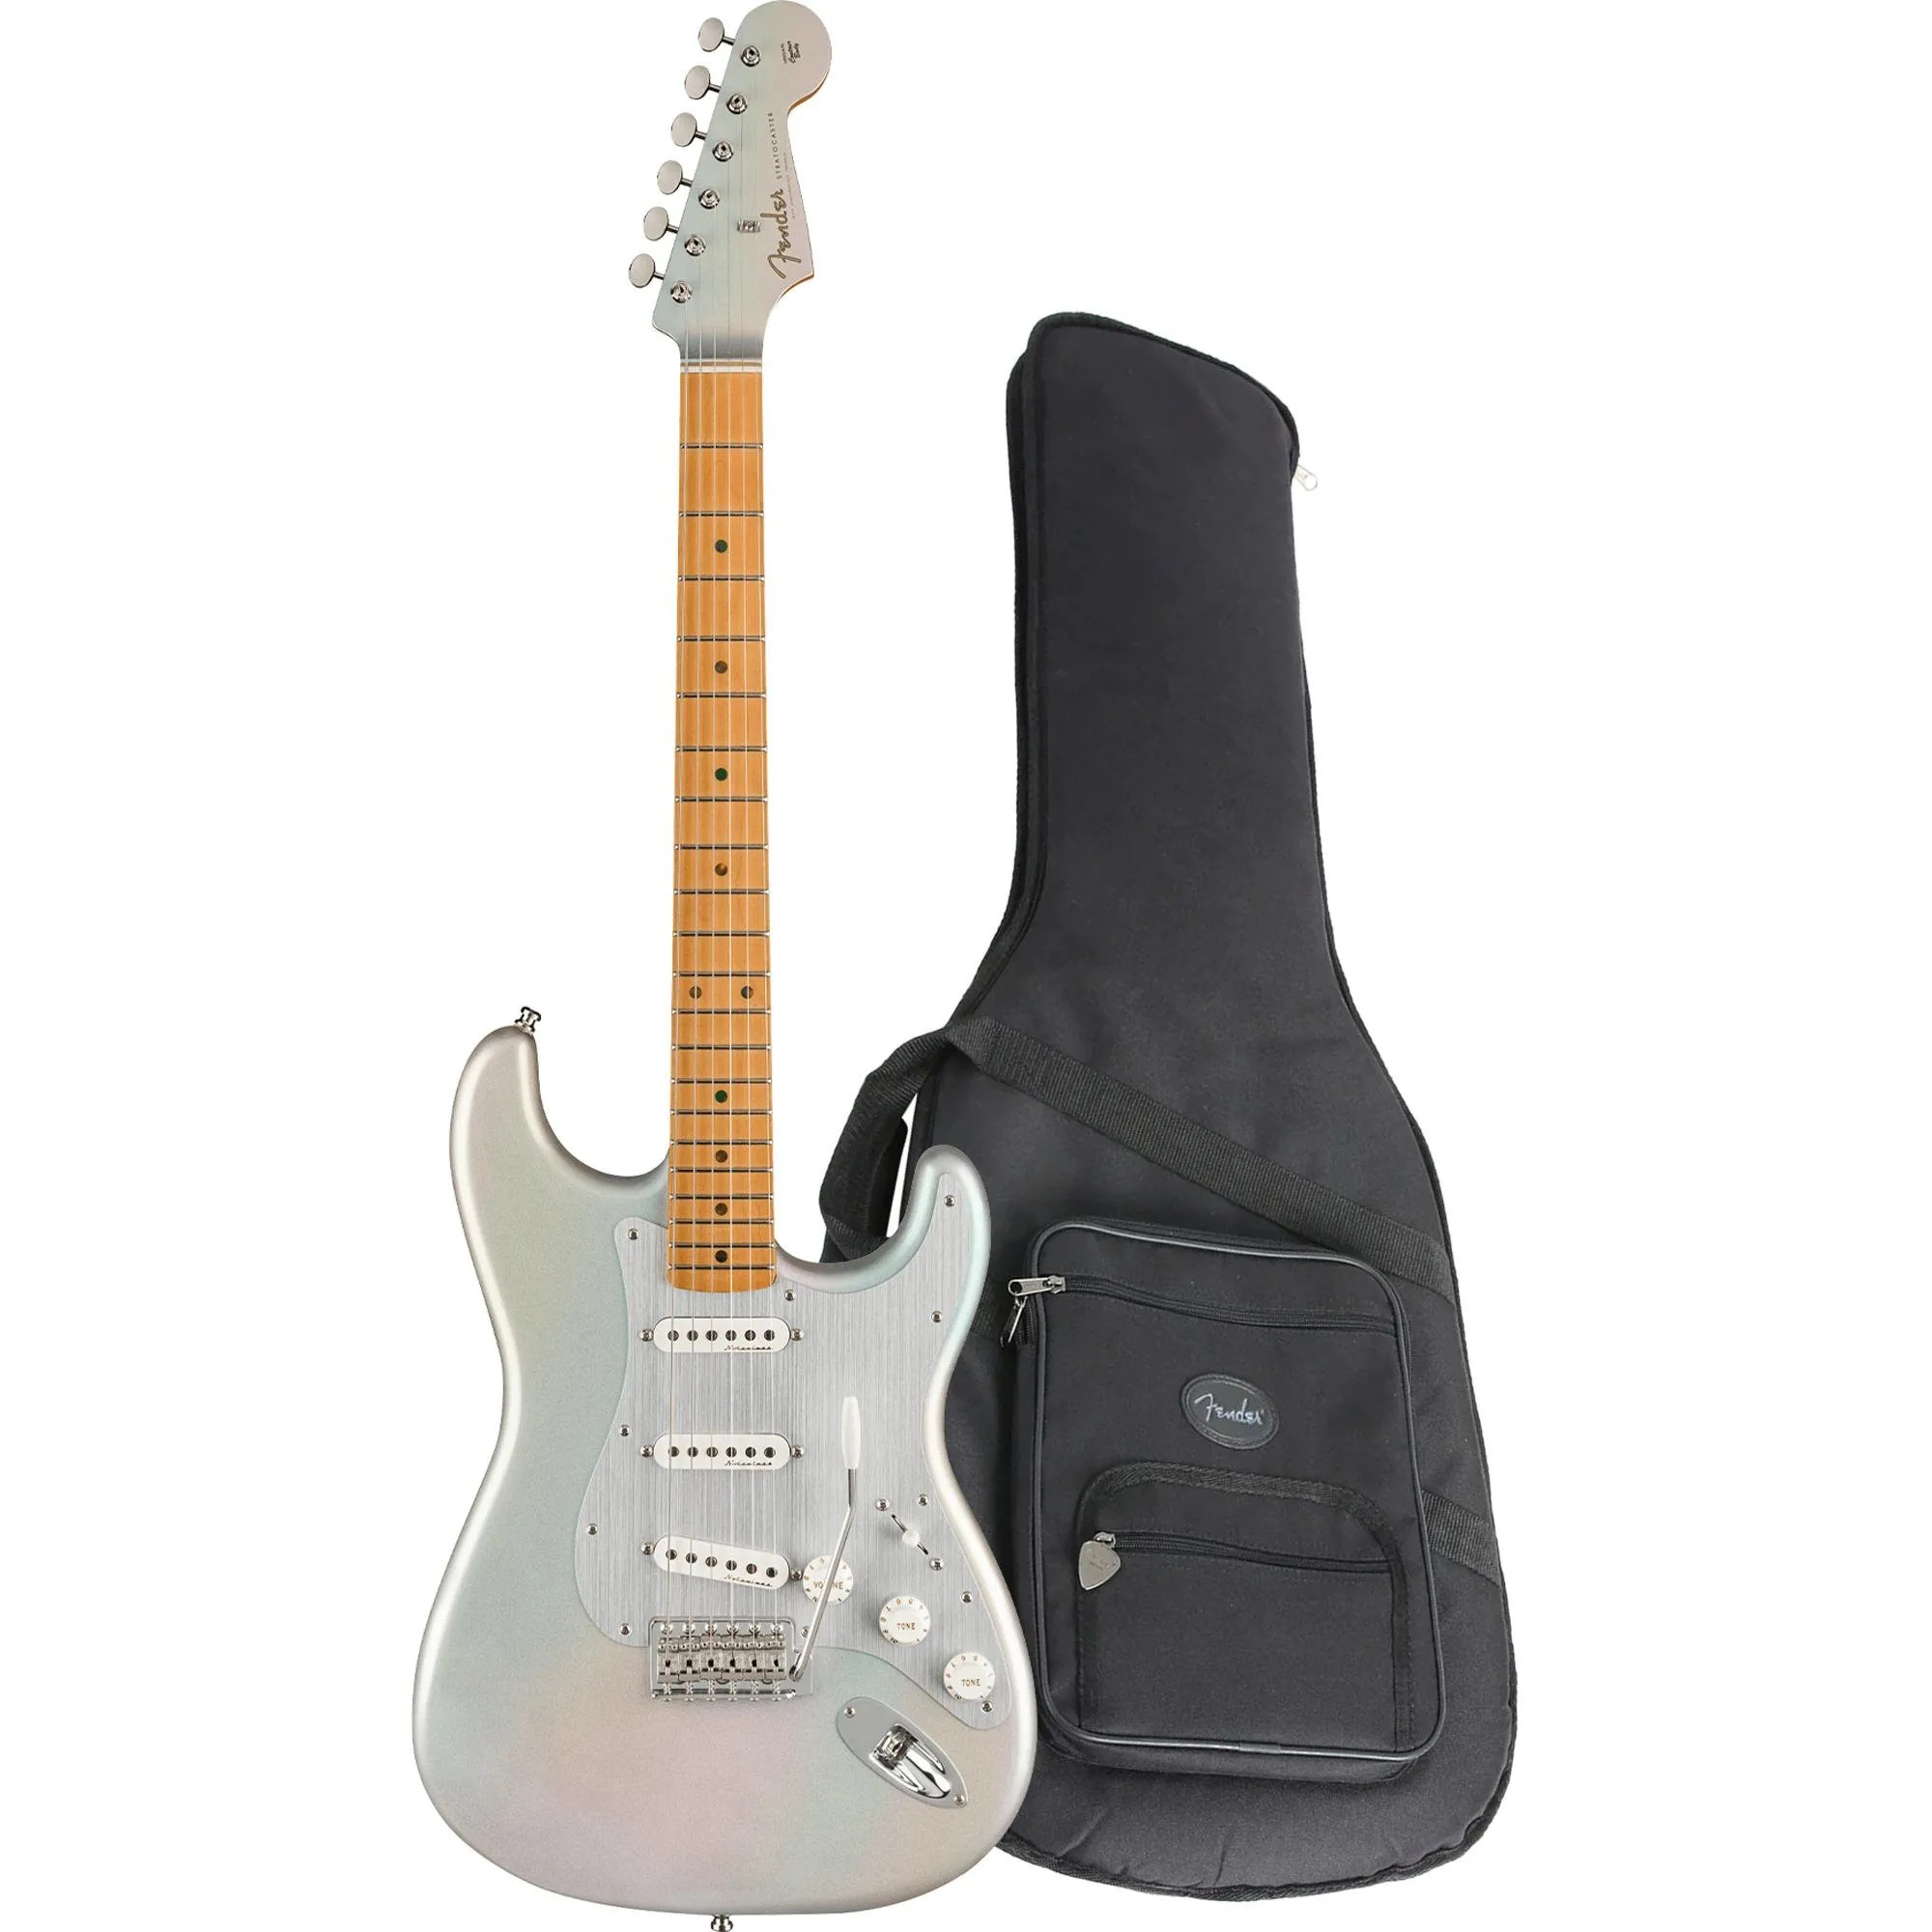 Guitarra Fender Stratocaster H.E.R Chrome Glow com Bag (79279)